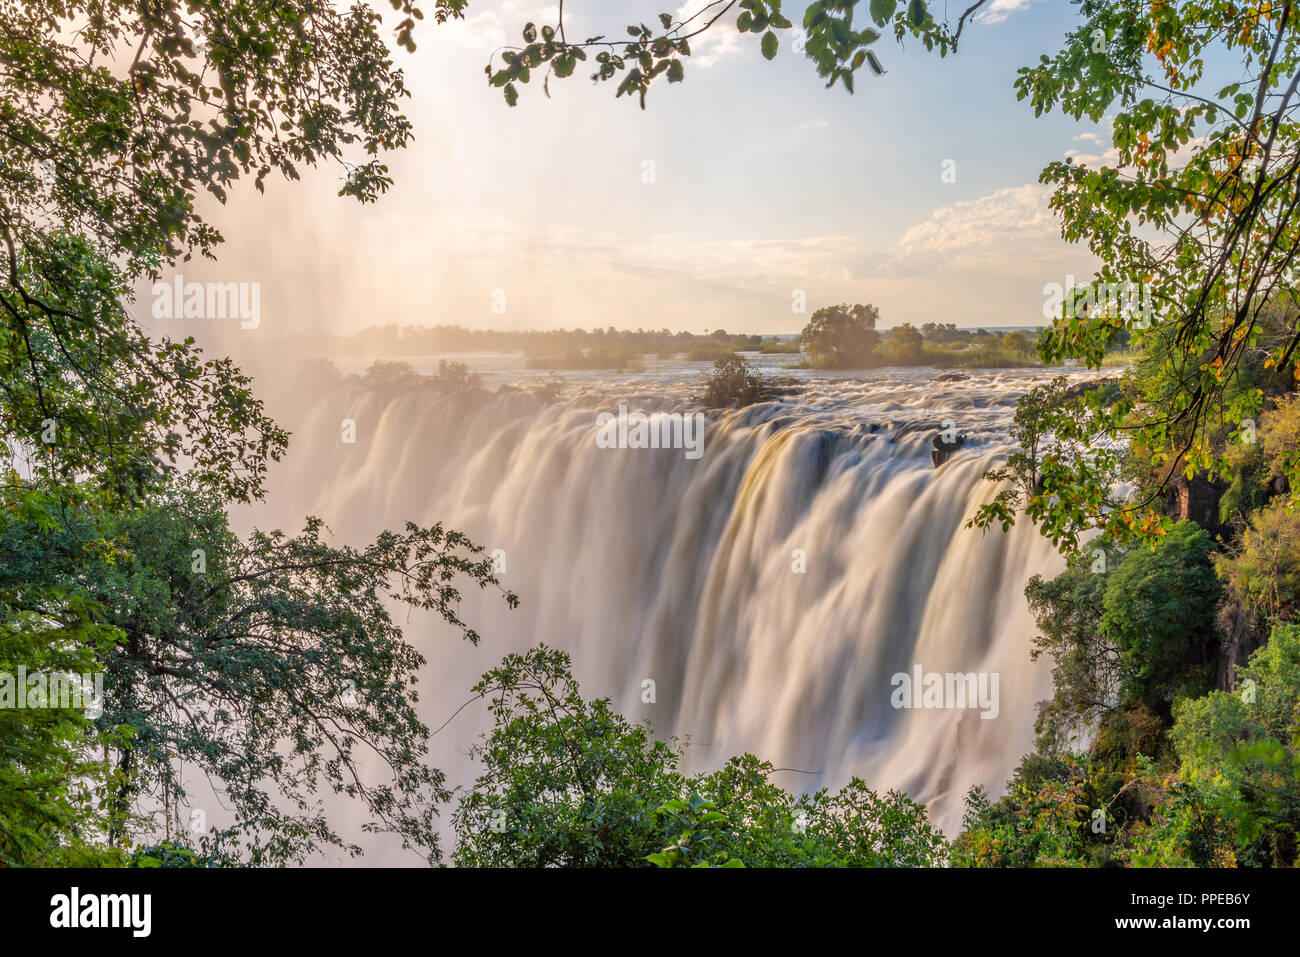 Victoria falls on Zambezi river, between Zambia and Zimbabwe Stock Photo